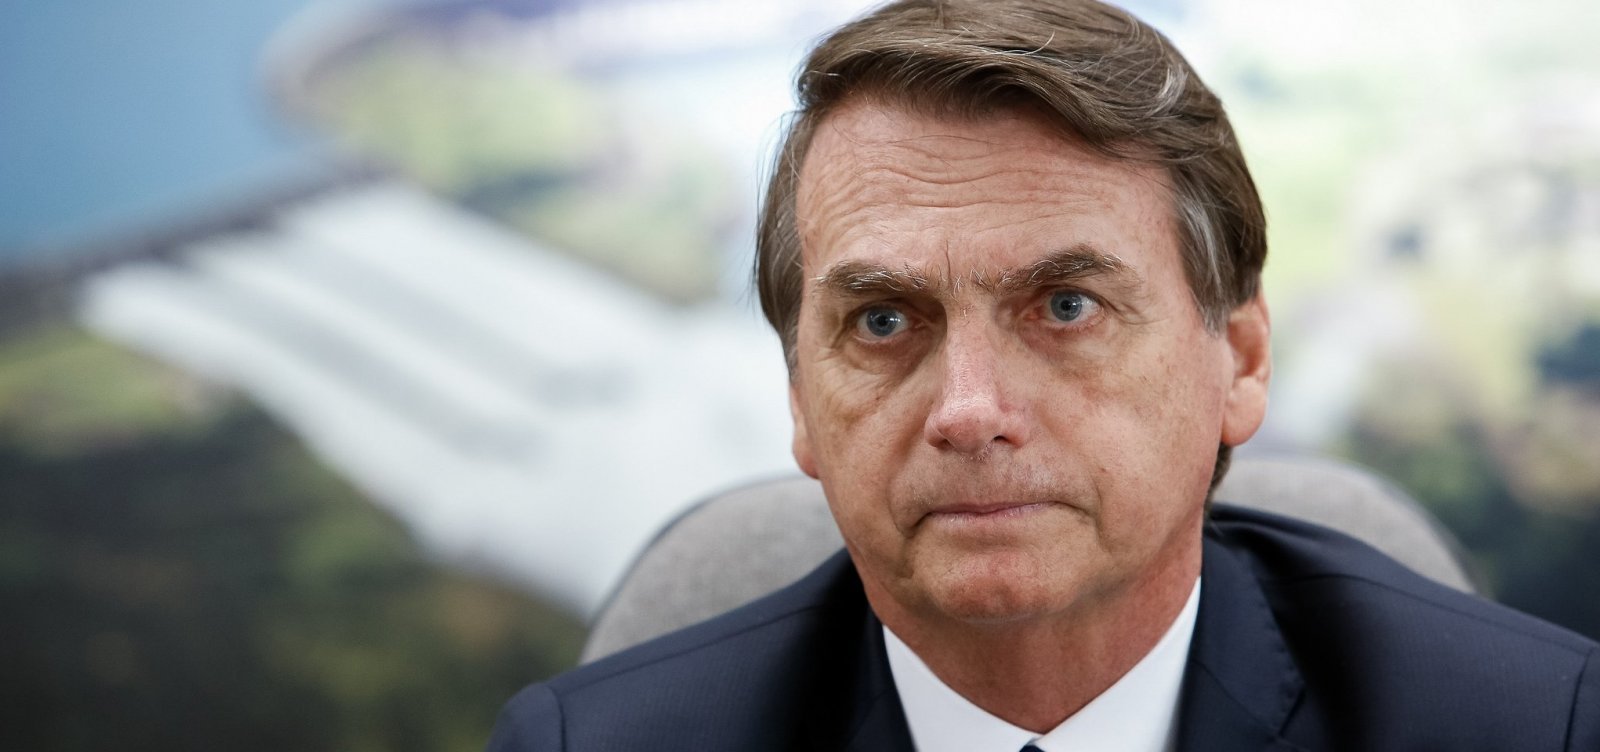 Bolsonaro inicia governo com menor aprovação que FHC, Lula e Dilma